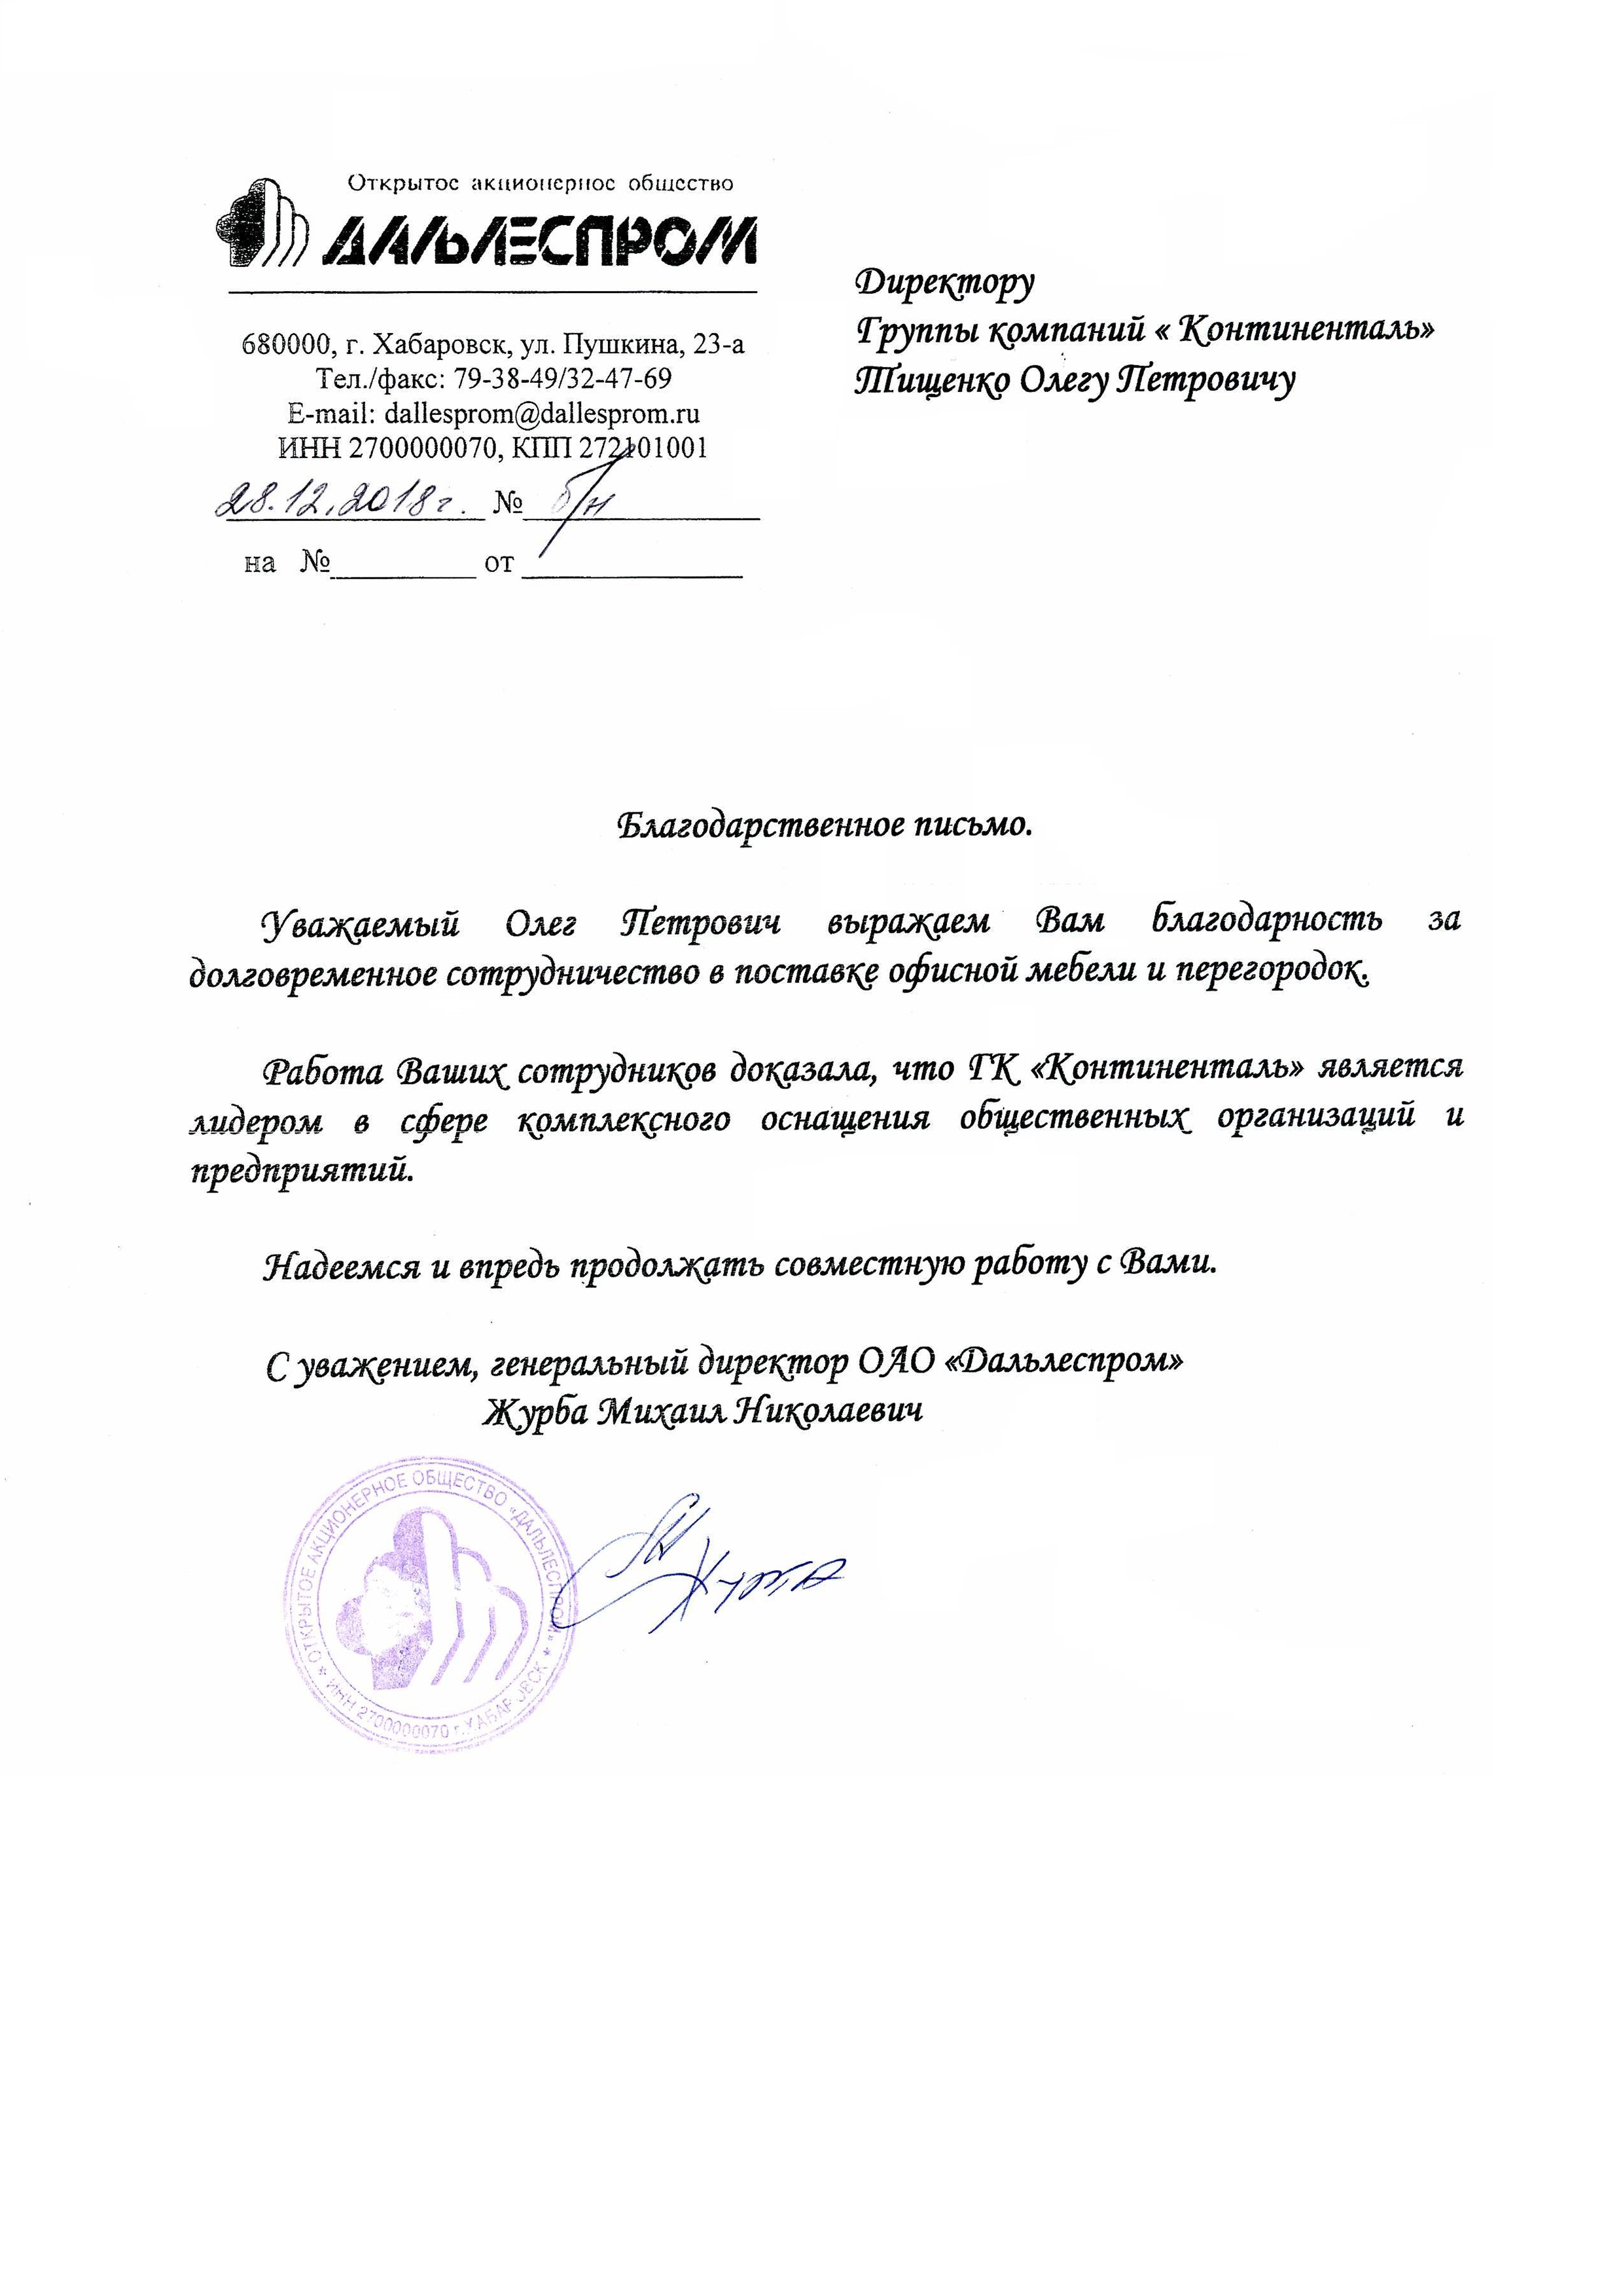 ОАО "Дальлеспром" выражает благодарность за долговременное сотрудничество в поставке офисной мебели и перегородок